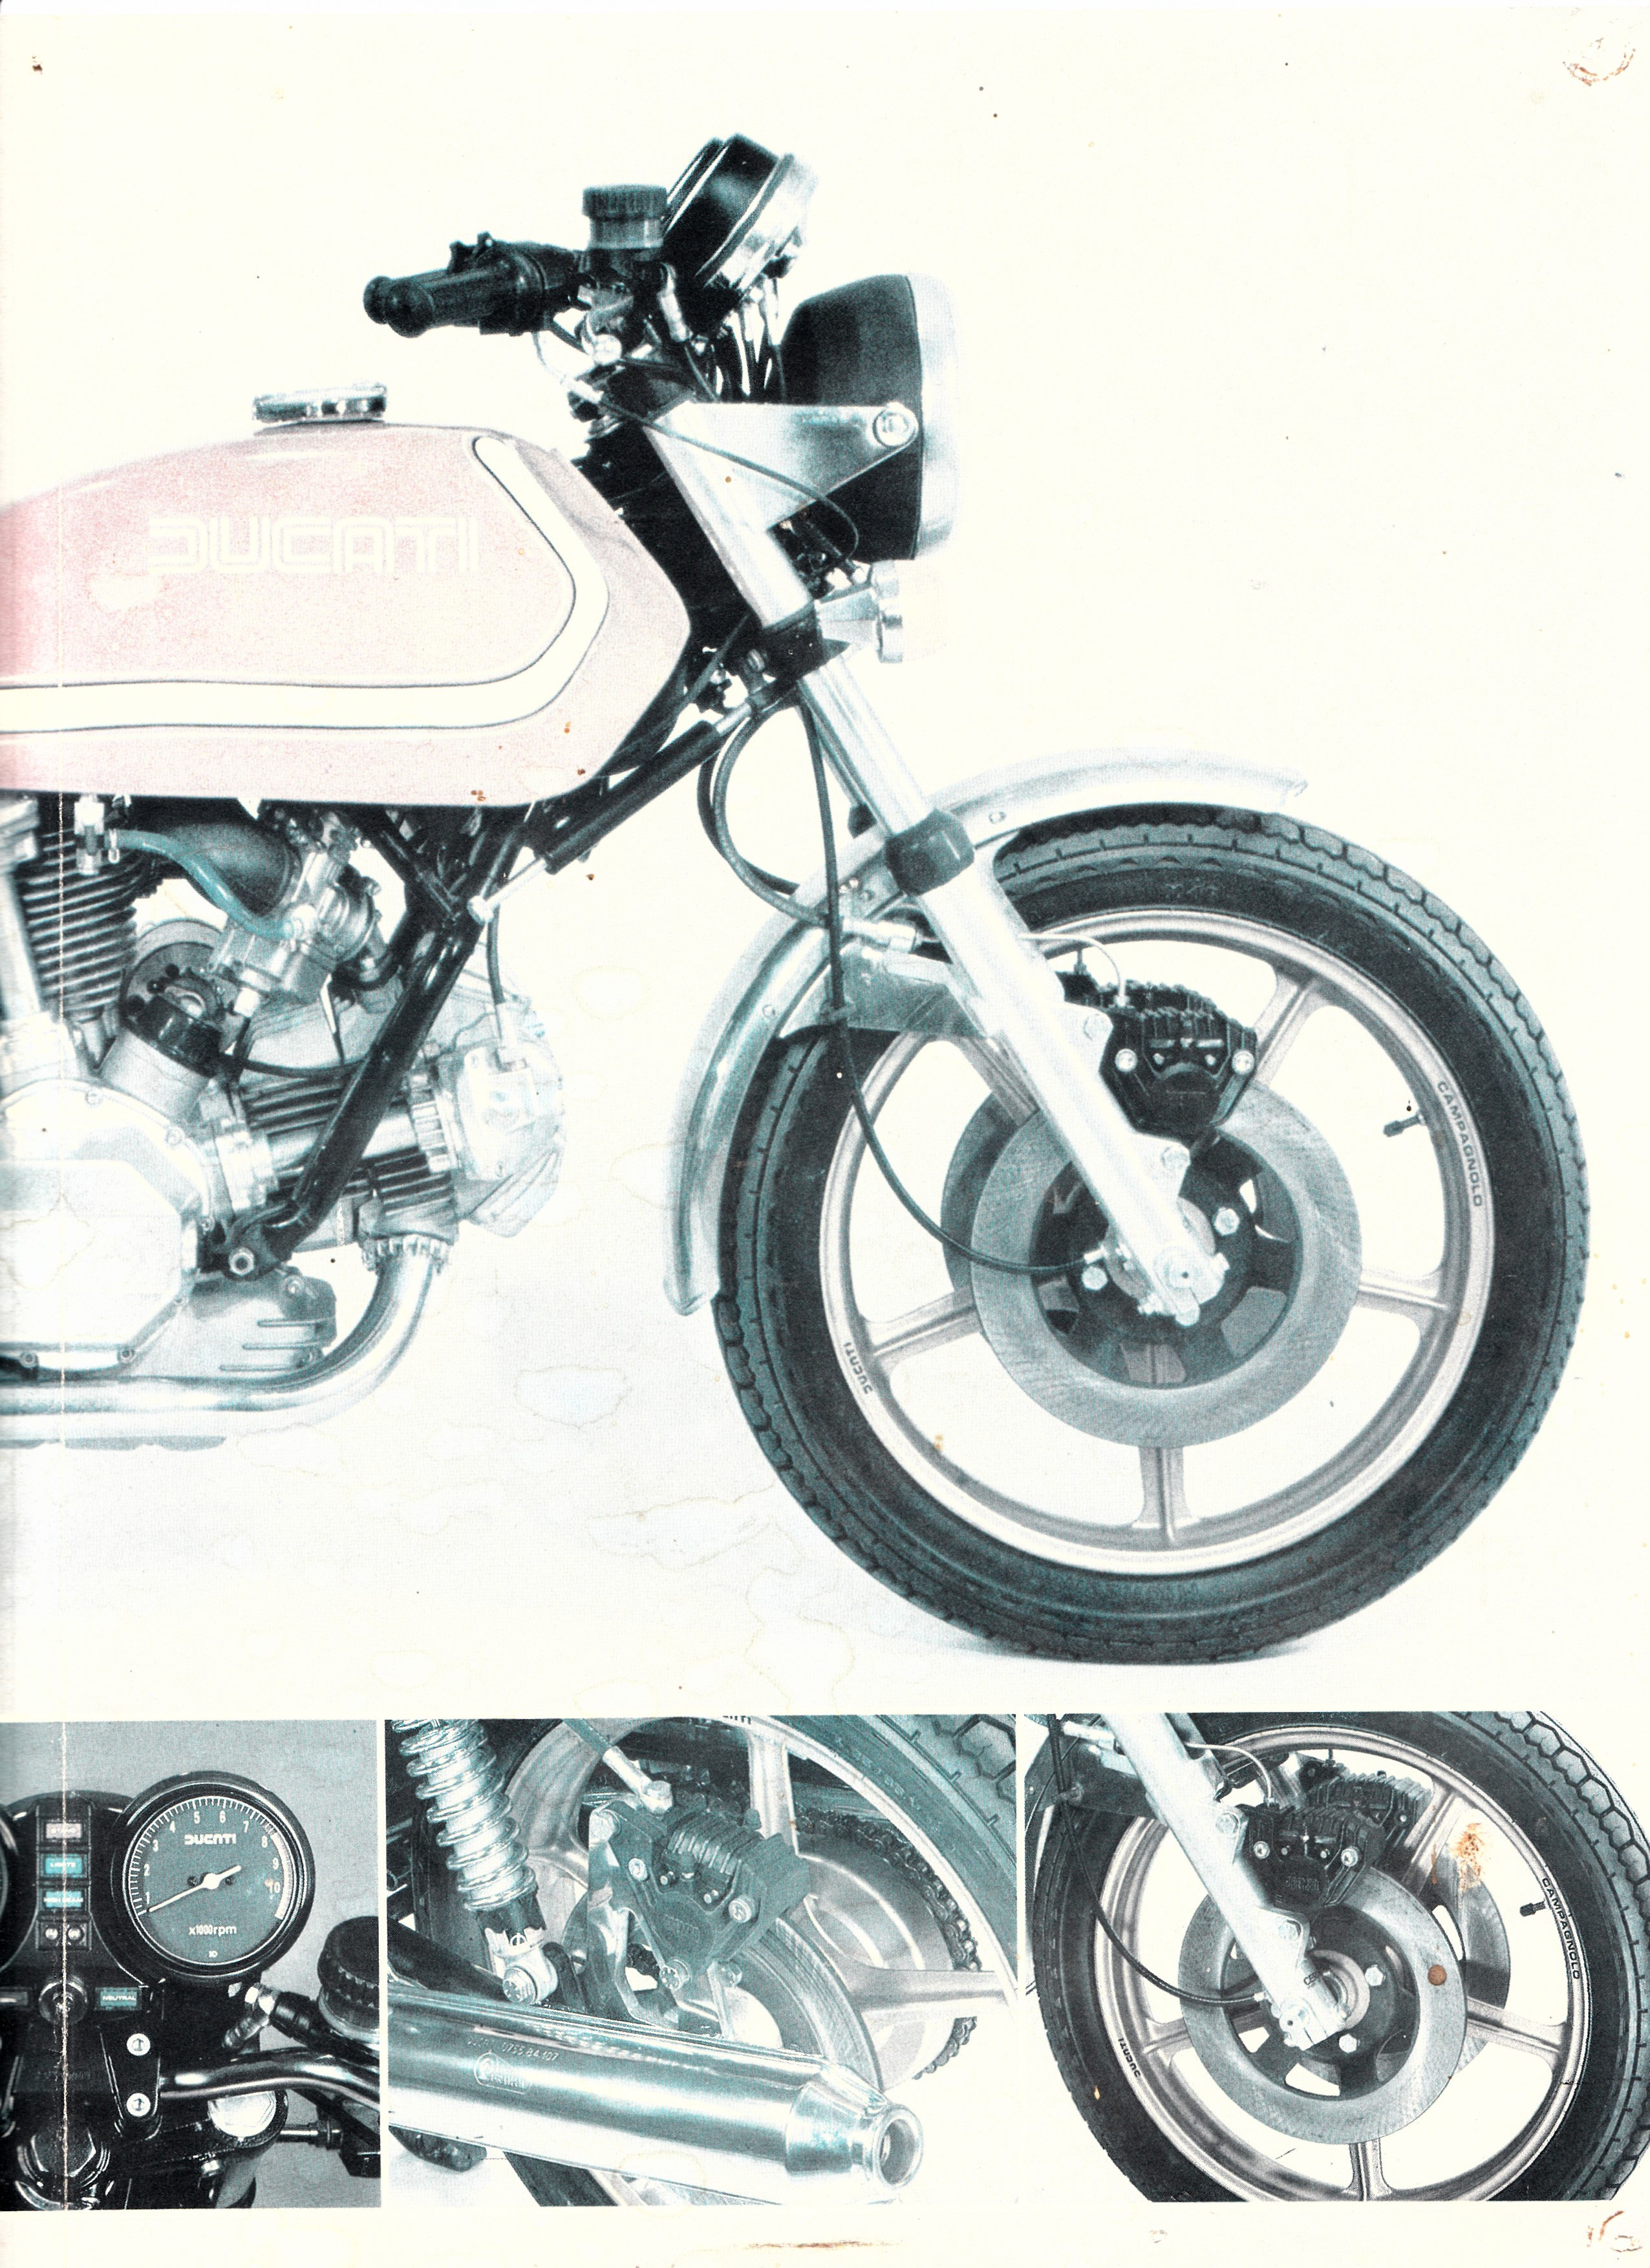 Brochure - Ducati 900 SD Darmah